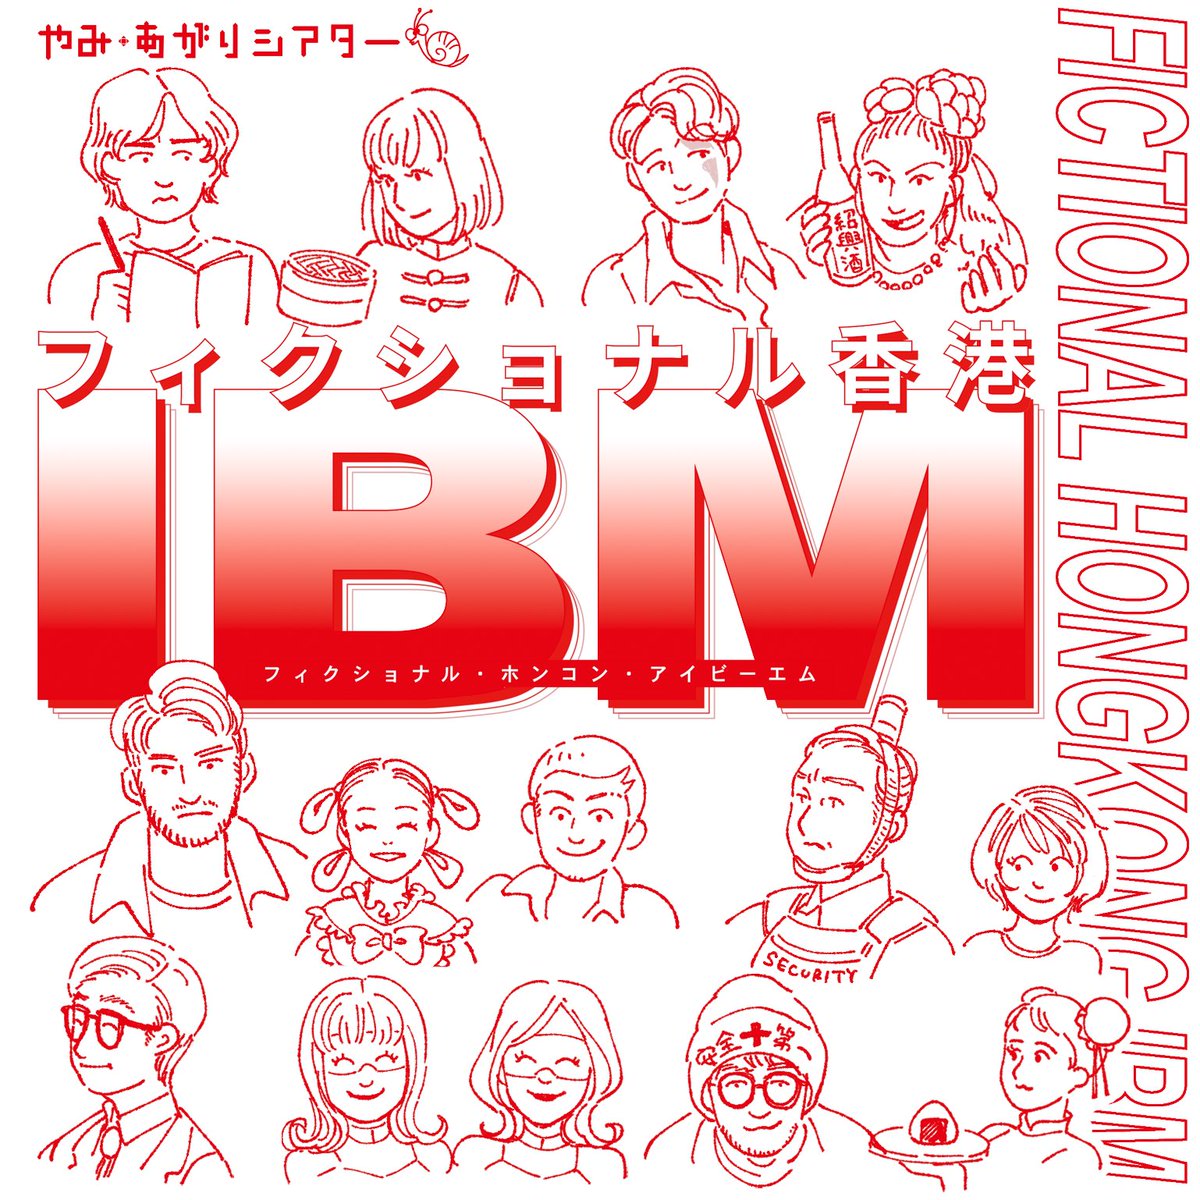 #フィクショナル香港IBM 当日パンフレット用に登場人物の似顔絵も描いておりました✏️ これだけいて「全員」描き分けられるキャラの立ち方よ！